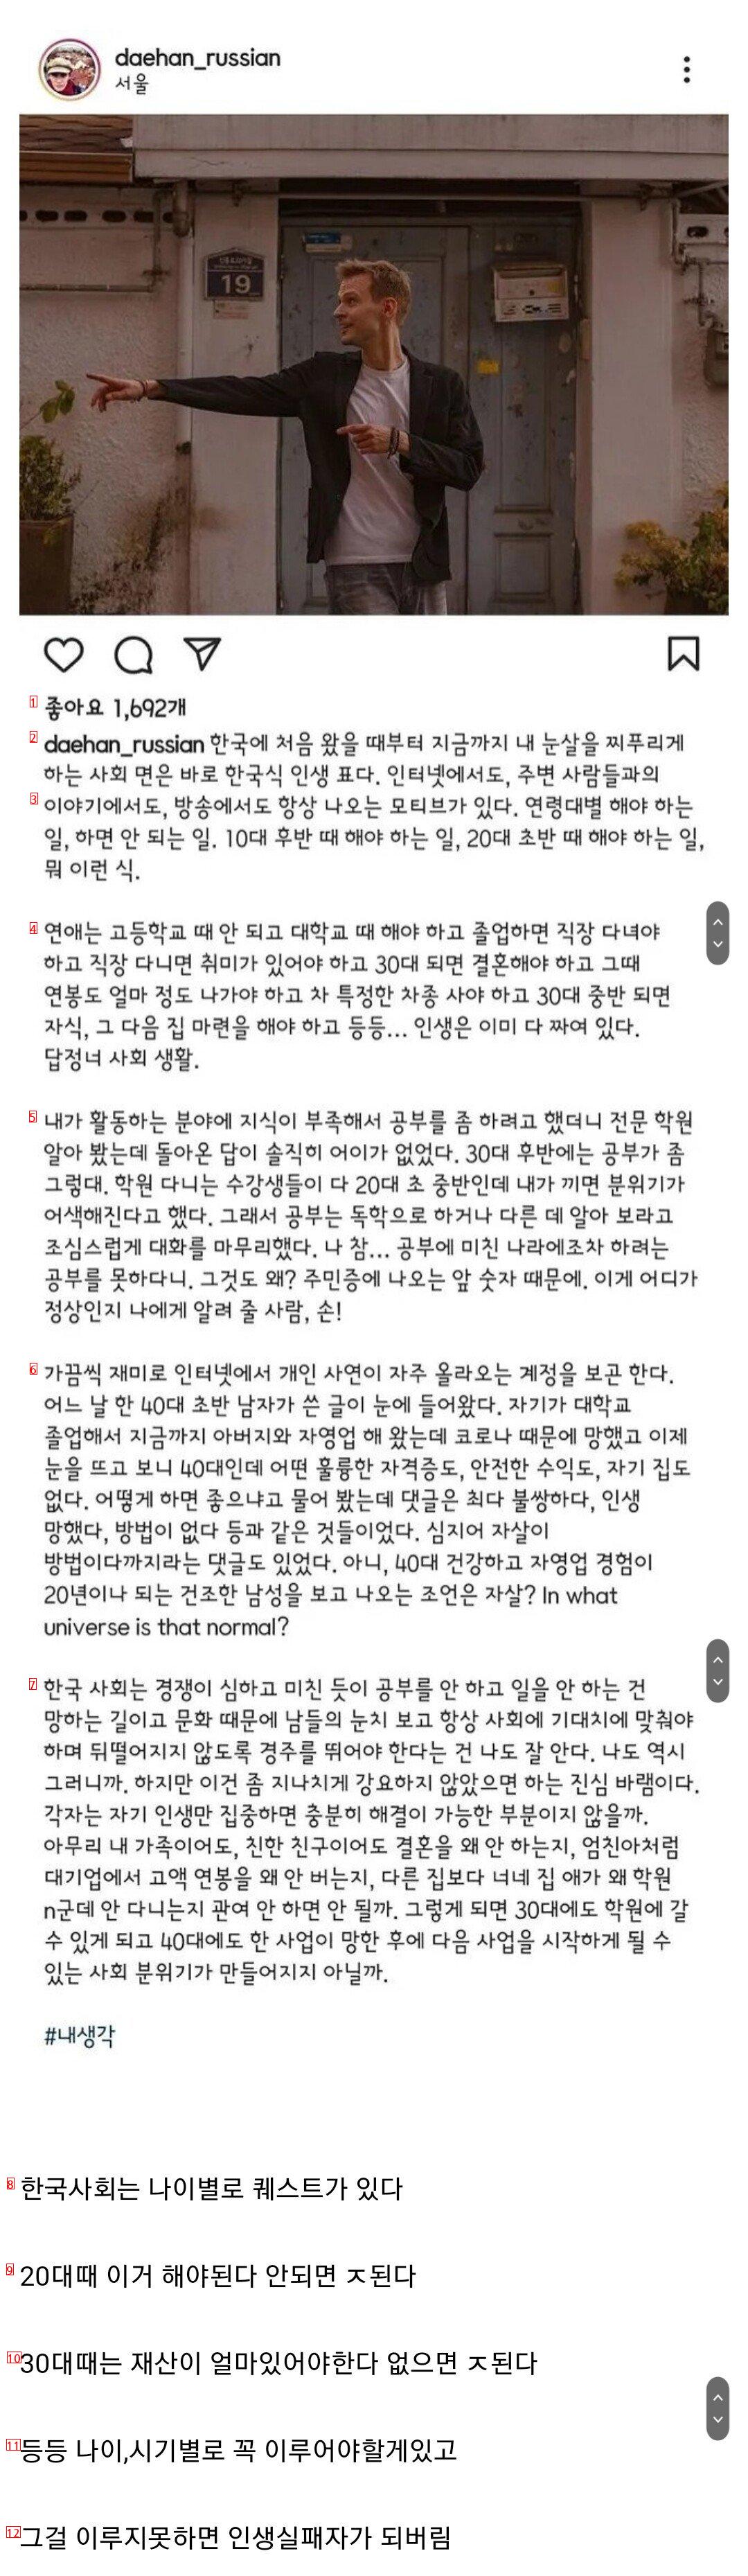 한국에 귀화한 사람이 말하는 한국사회 문제점.jpg